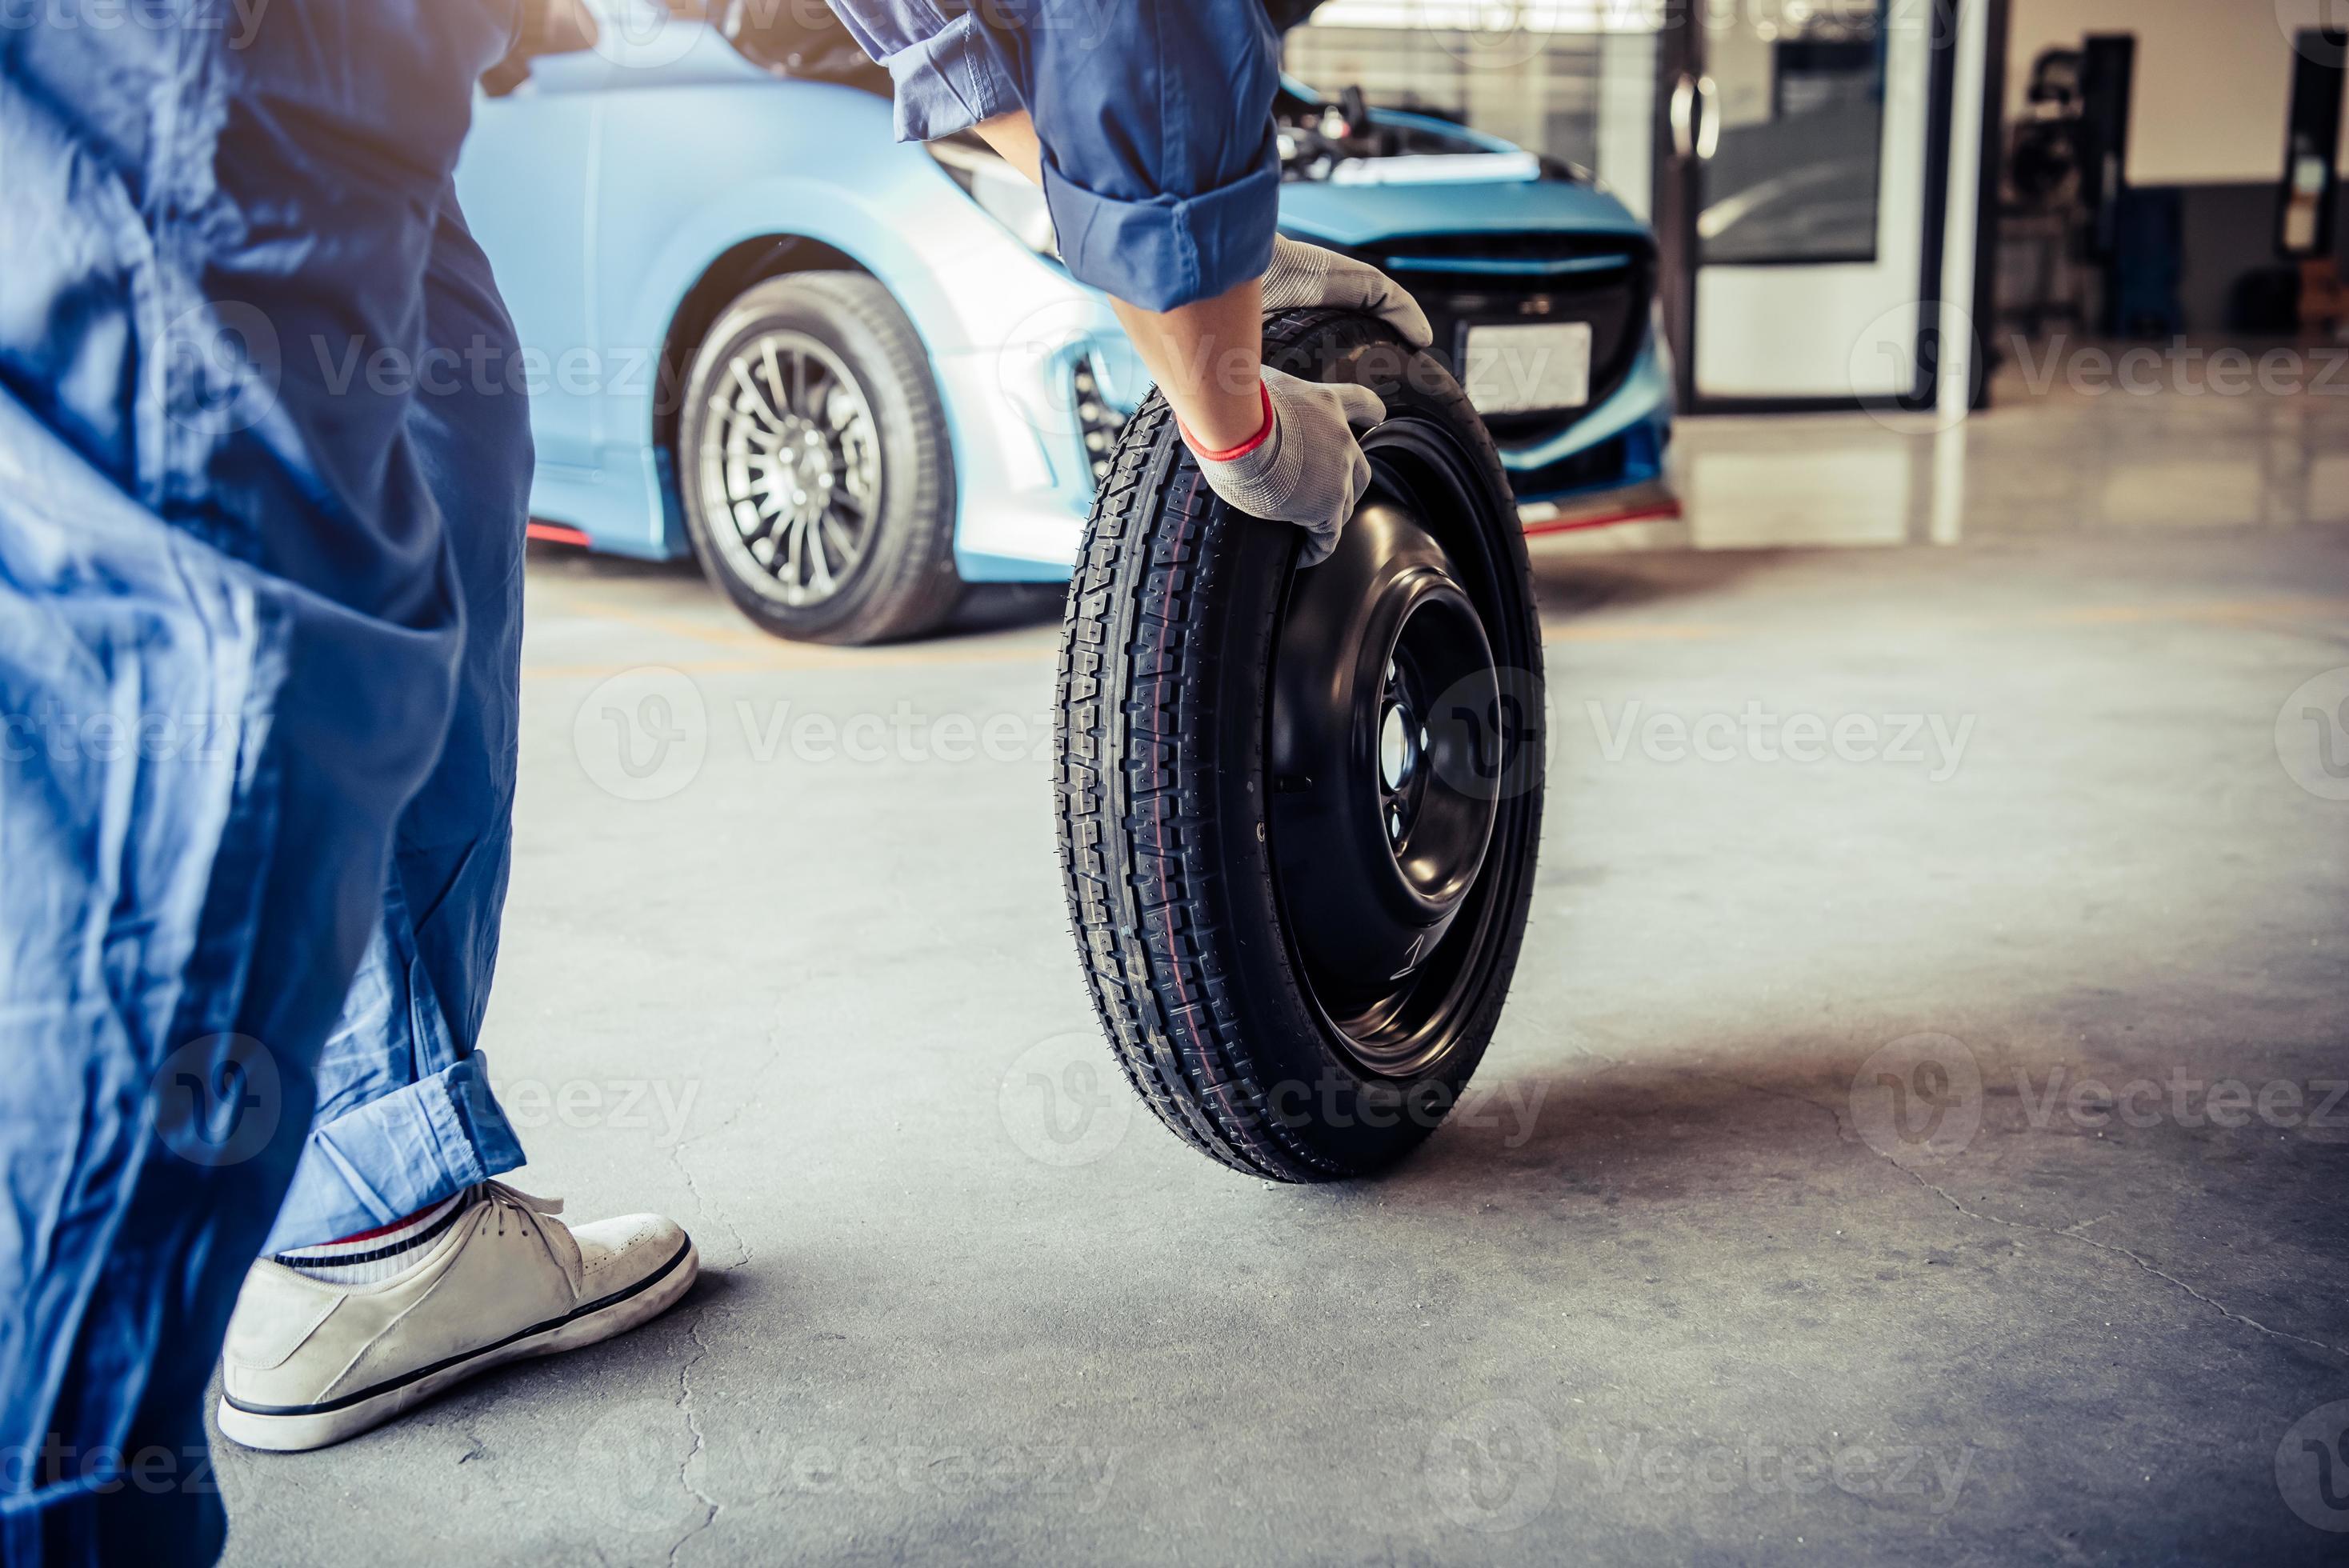 Mécanique automobile changement de pneu au garage de l'atelier de réparation automobile photo